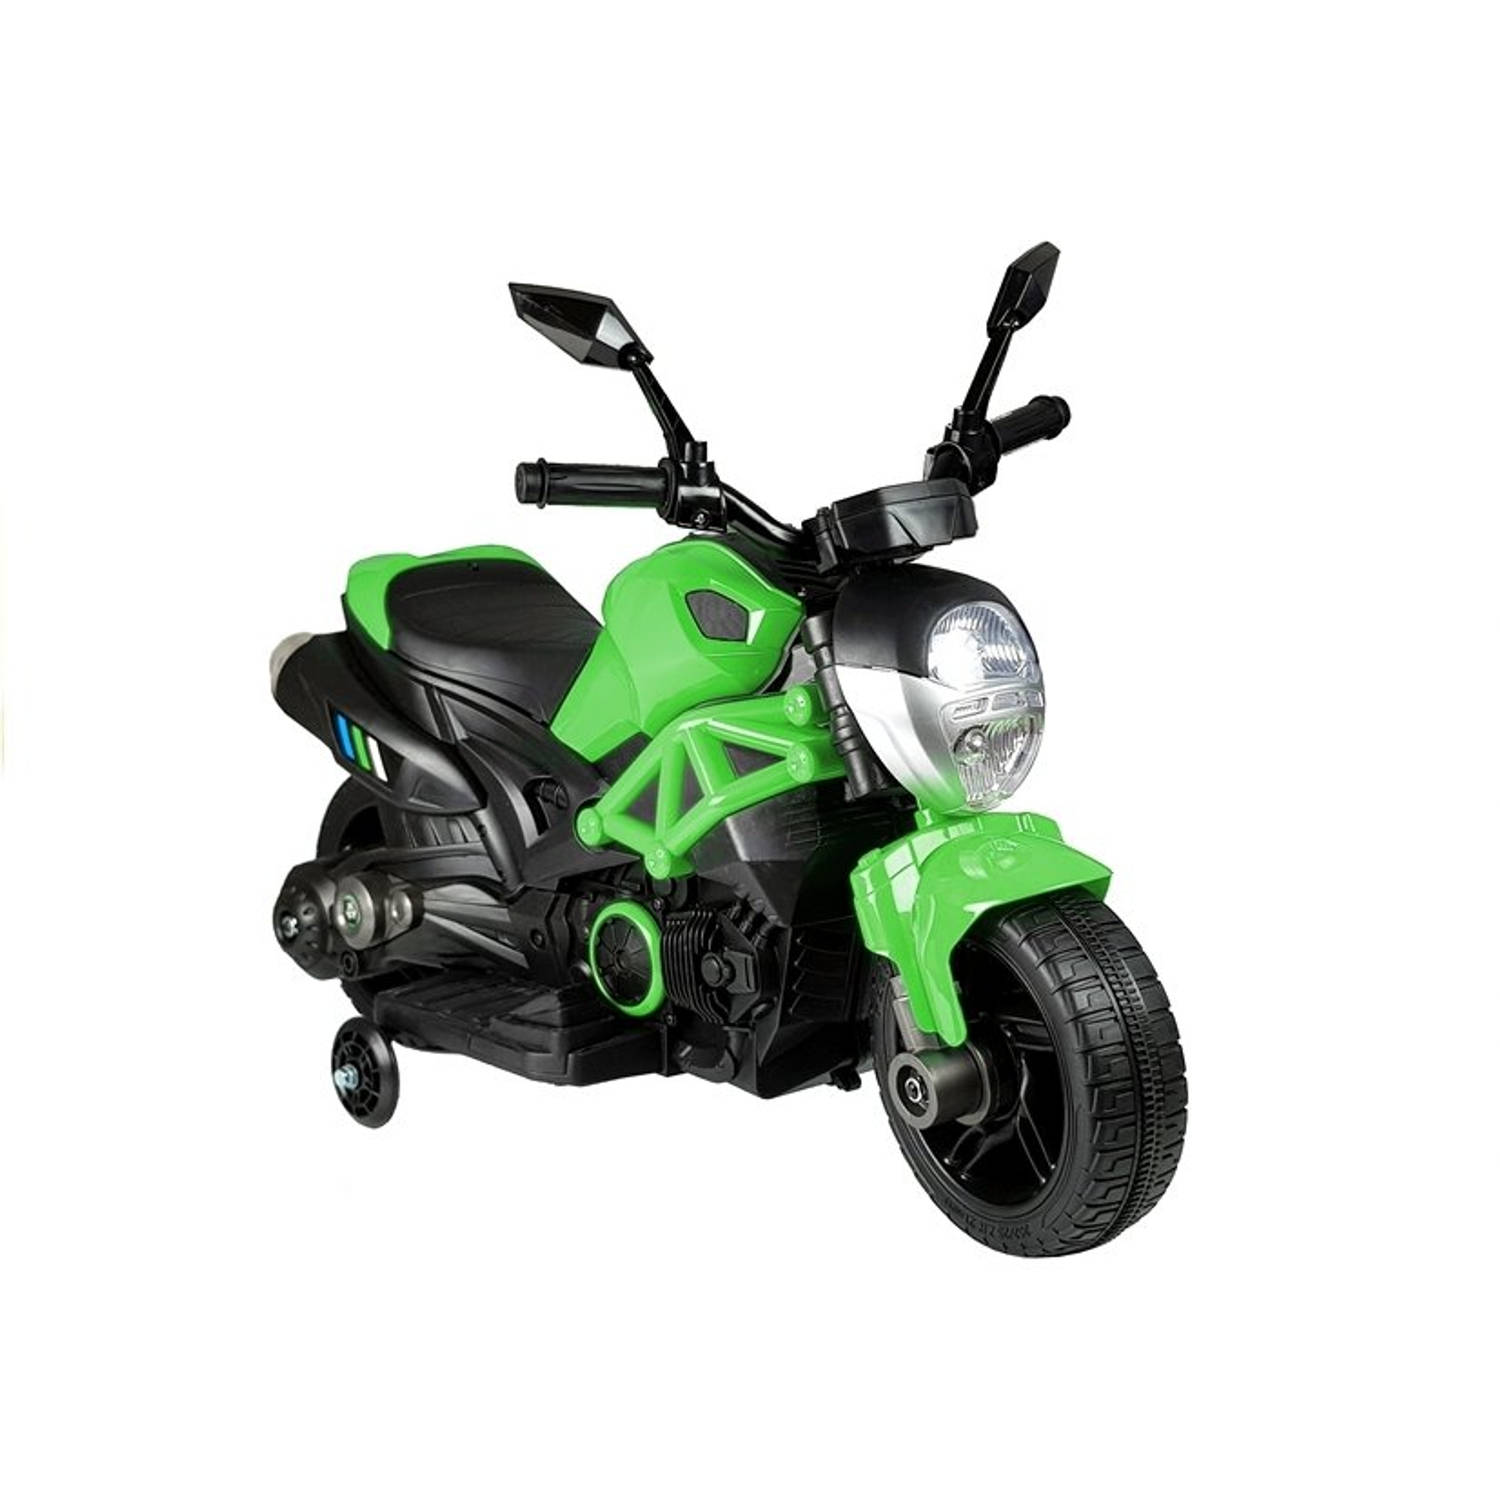 Elektrische naked bike - kindermotor - motor voor kinderen - tot 25kg max 1-3 km/h groen - kids accu motor